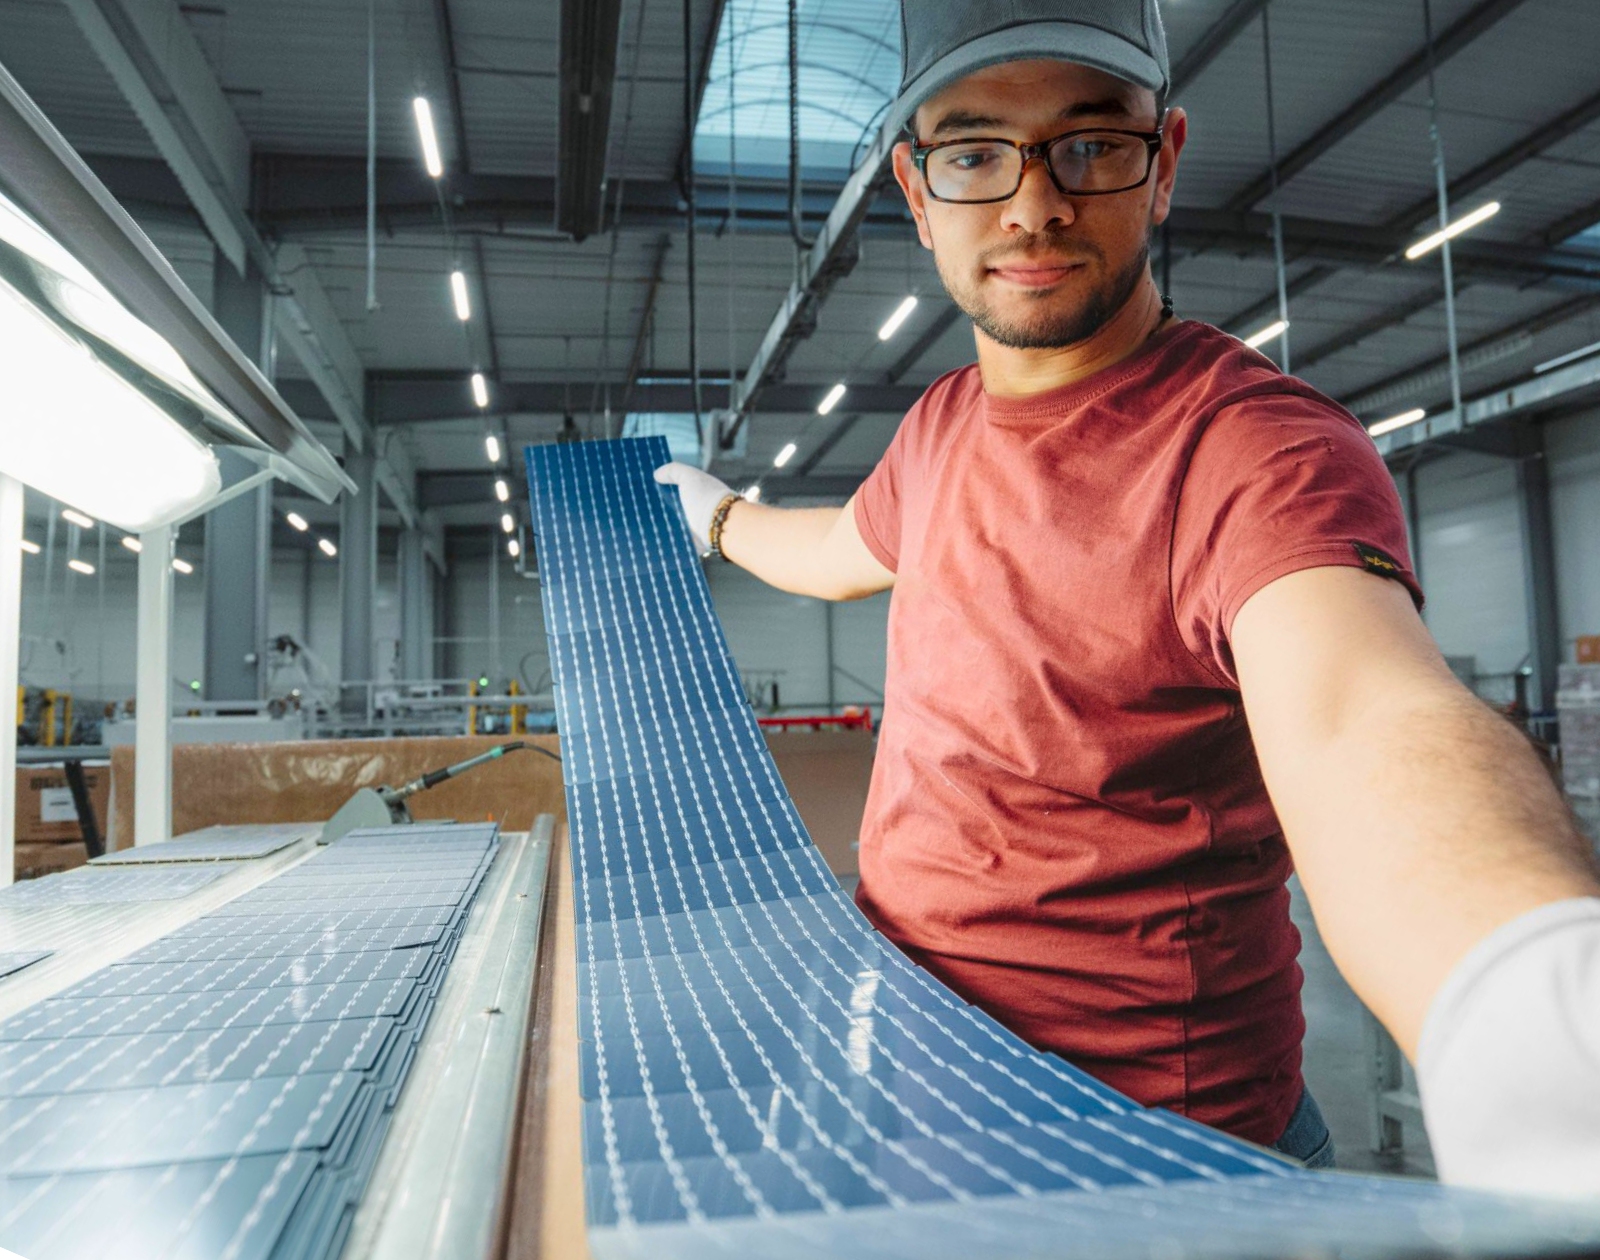 Panneaux solaires : pourquoi ce fabricant français est en grande difficulté